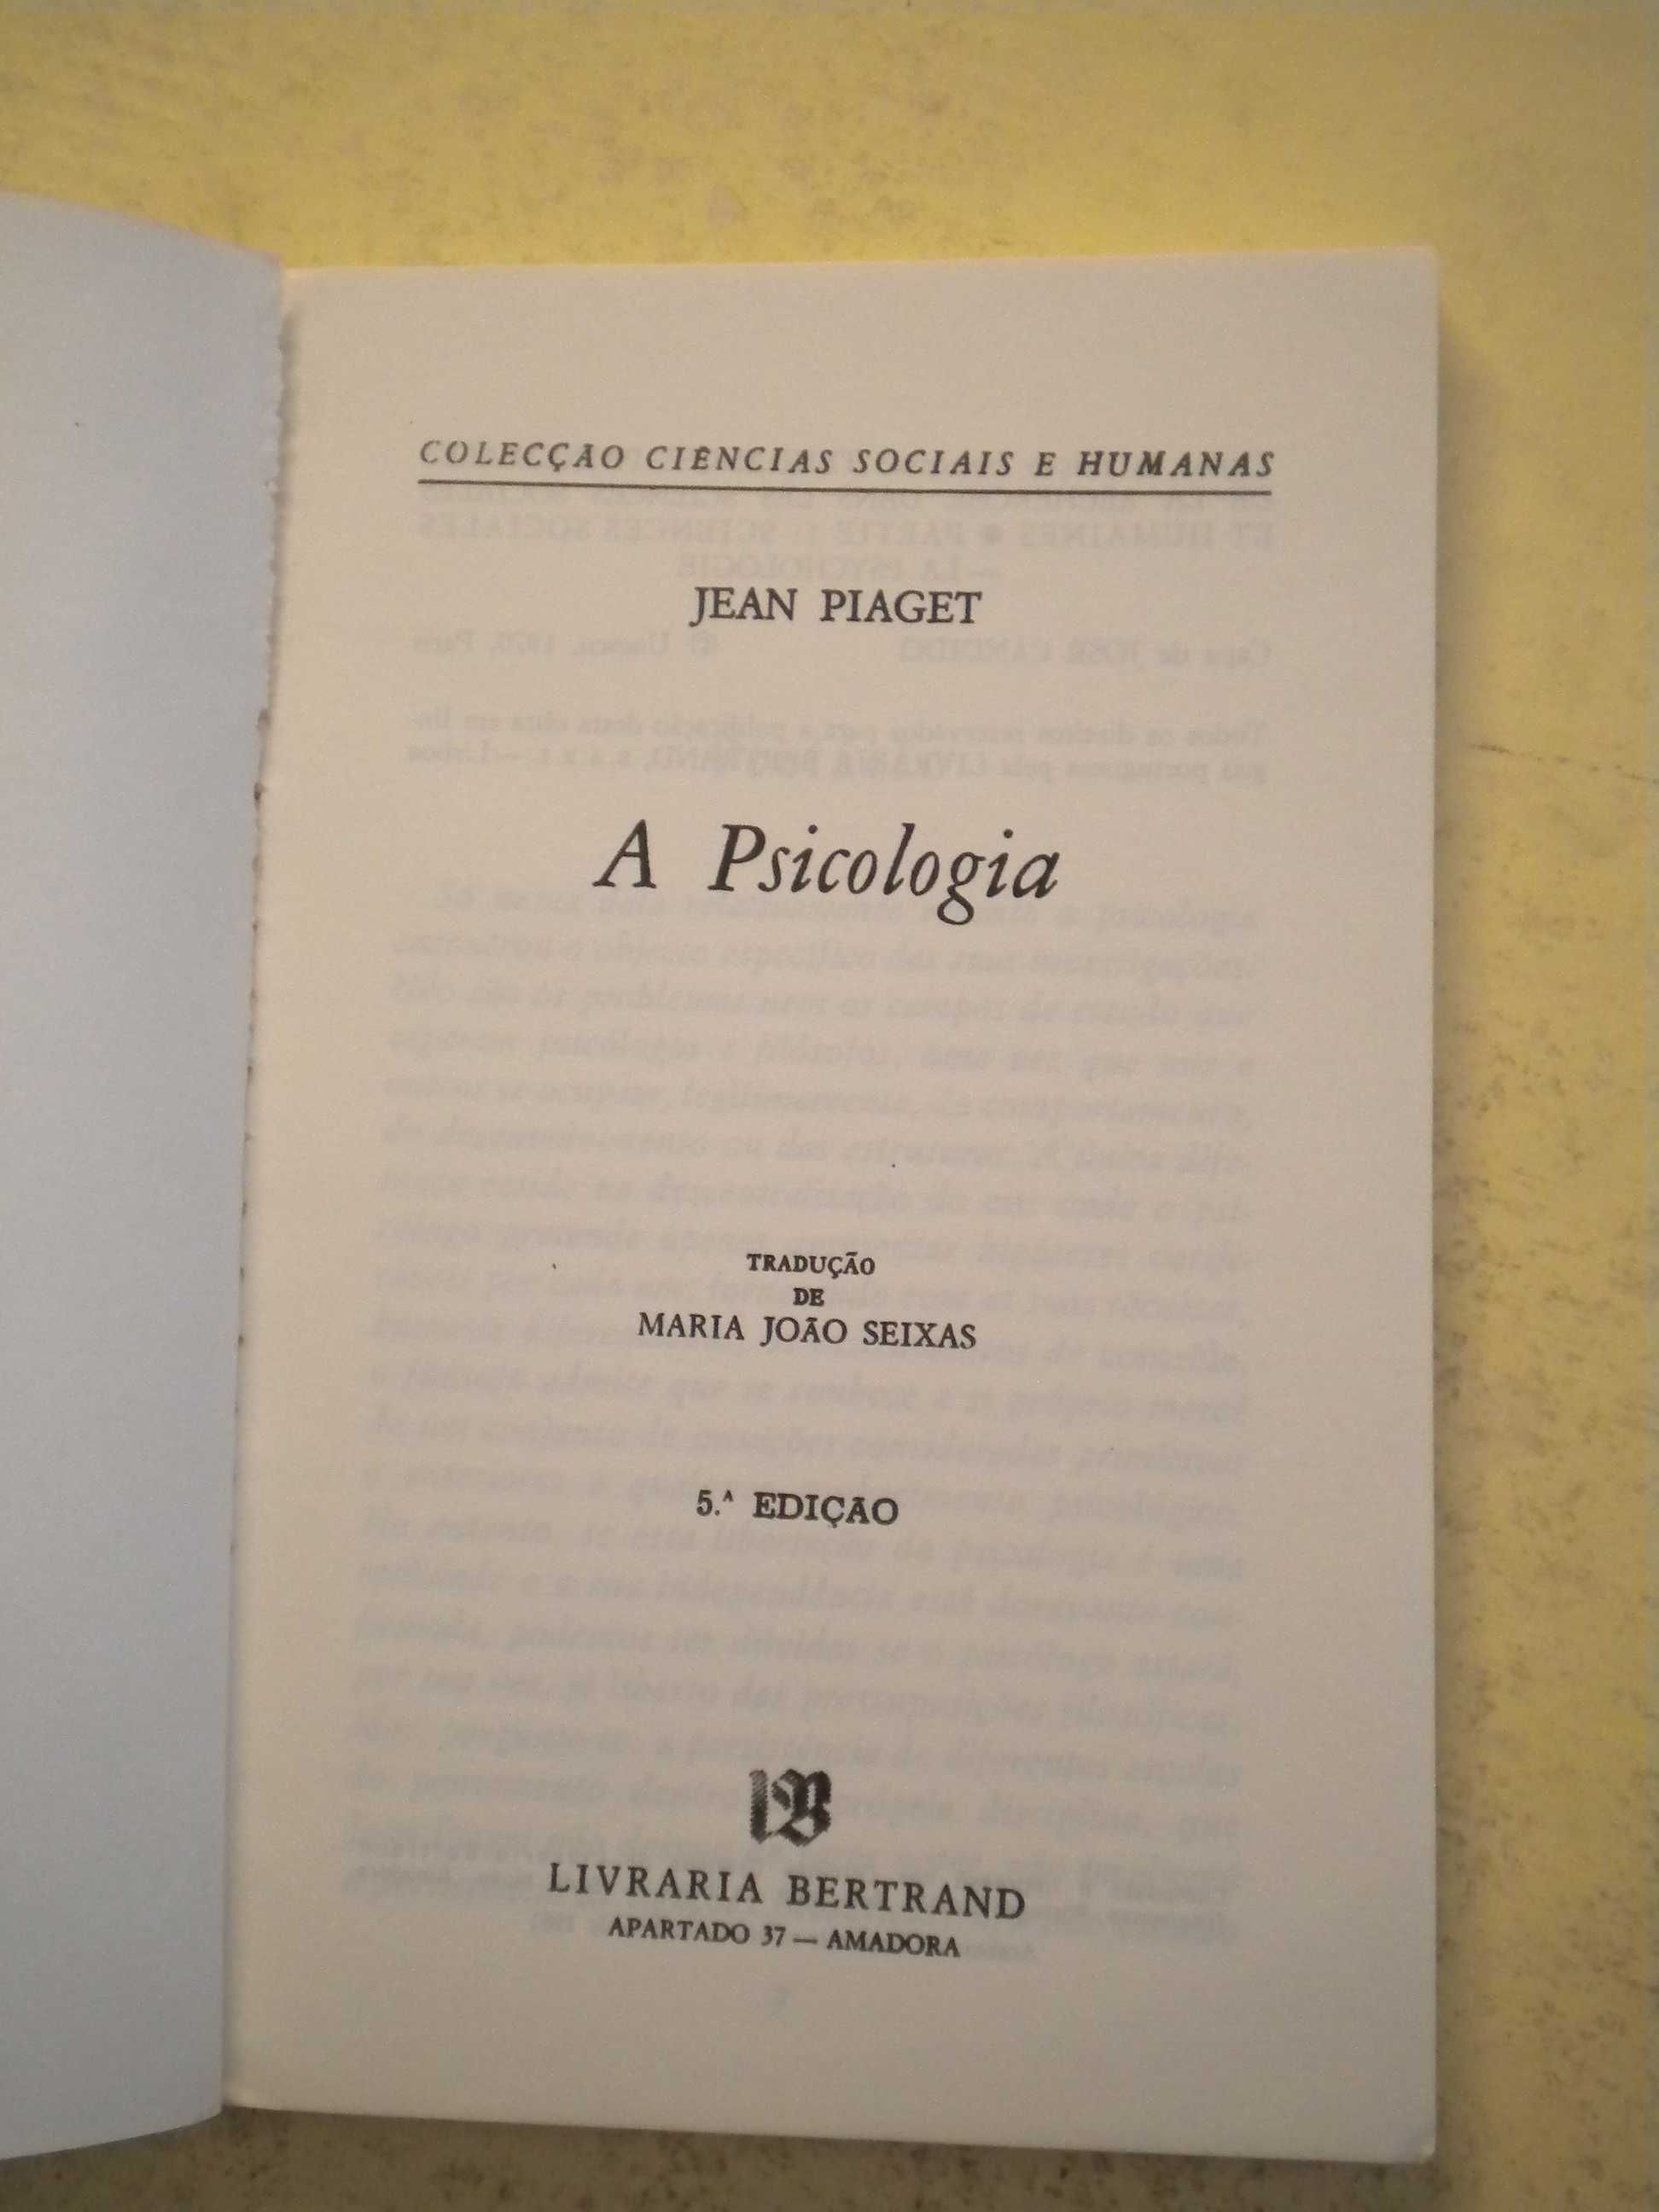 A Psicologia
de Jean Piaget